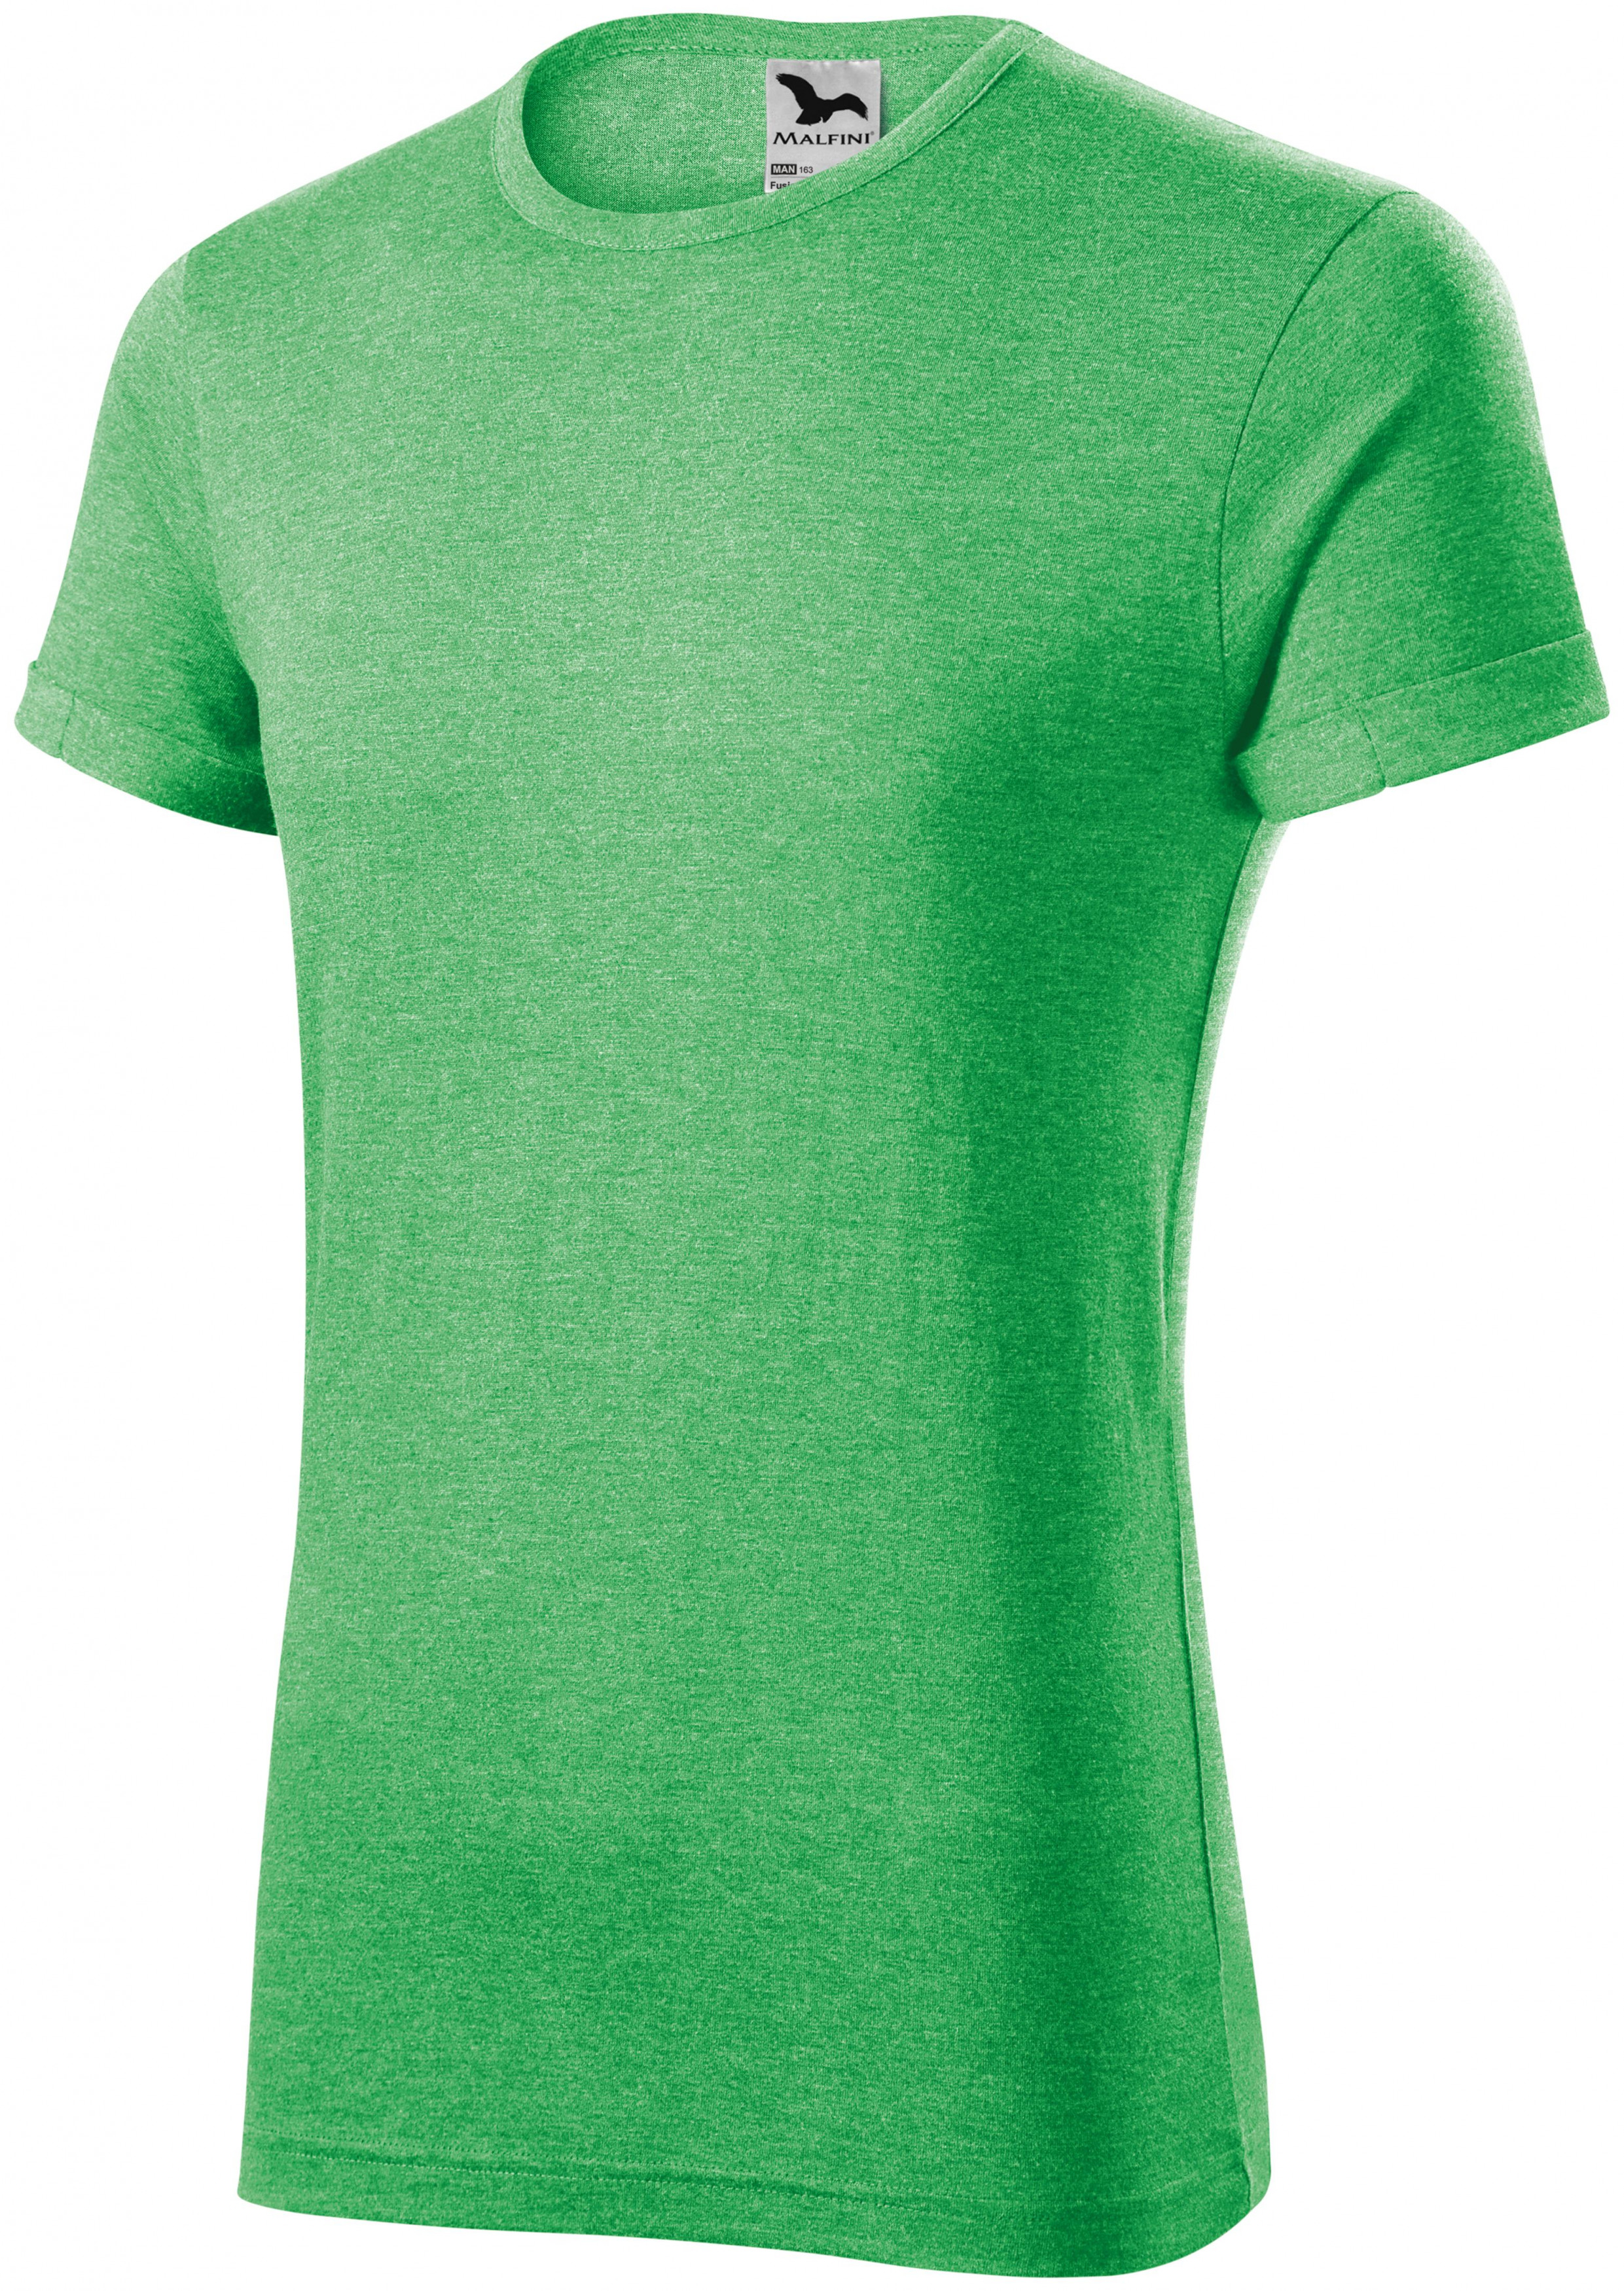 Pánske tričko s vyhrnutými rukávmi, zelený melír, S